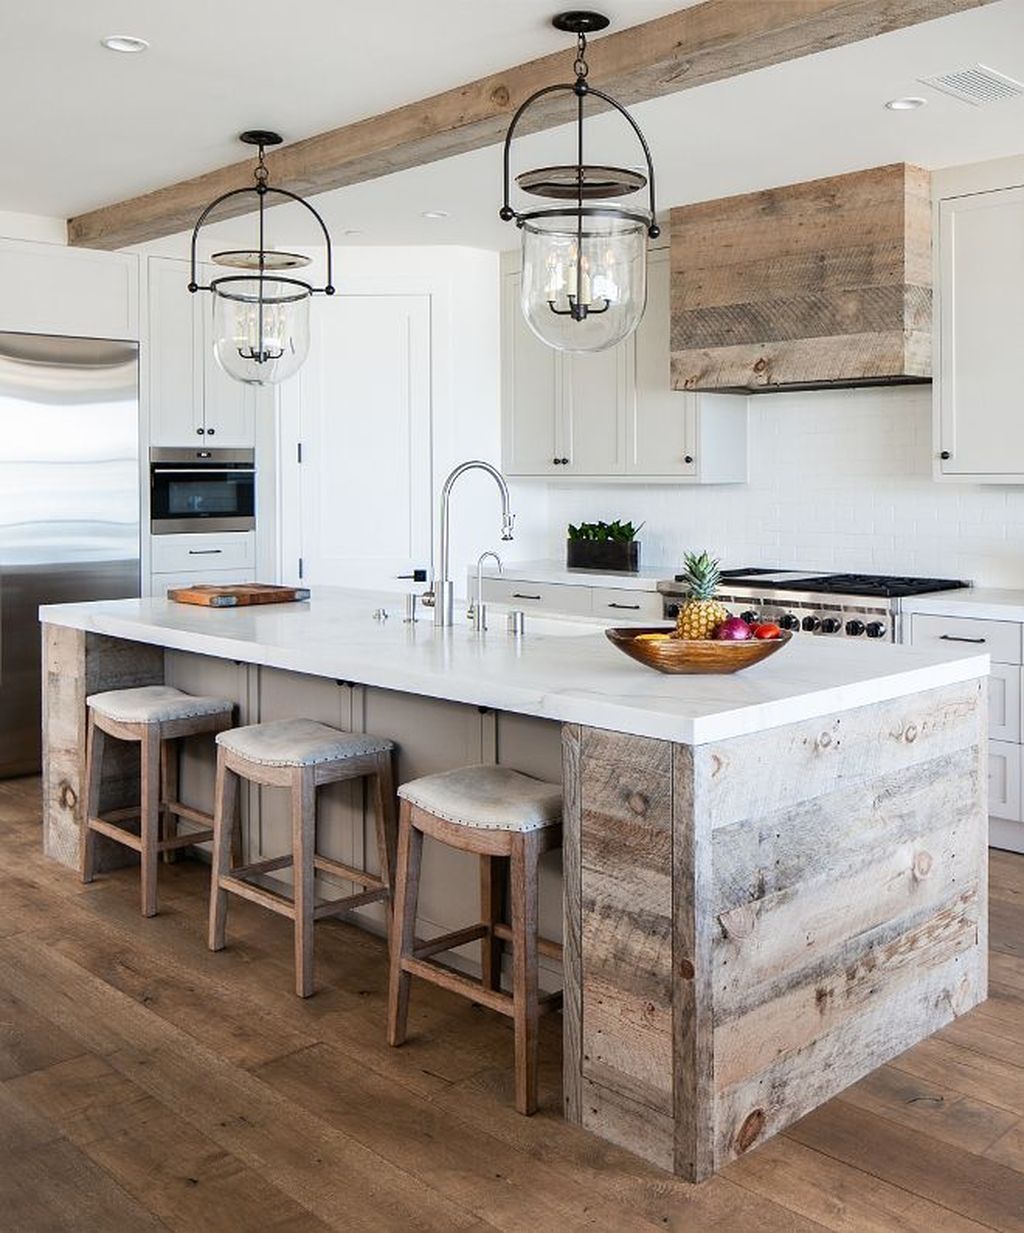 Những ý tưởng thiết kế siêu dễ giúp bạn sở hữu căn bếp đẹp mơ màng ấn tượng - Ảnh 13.